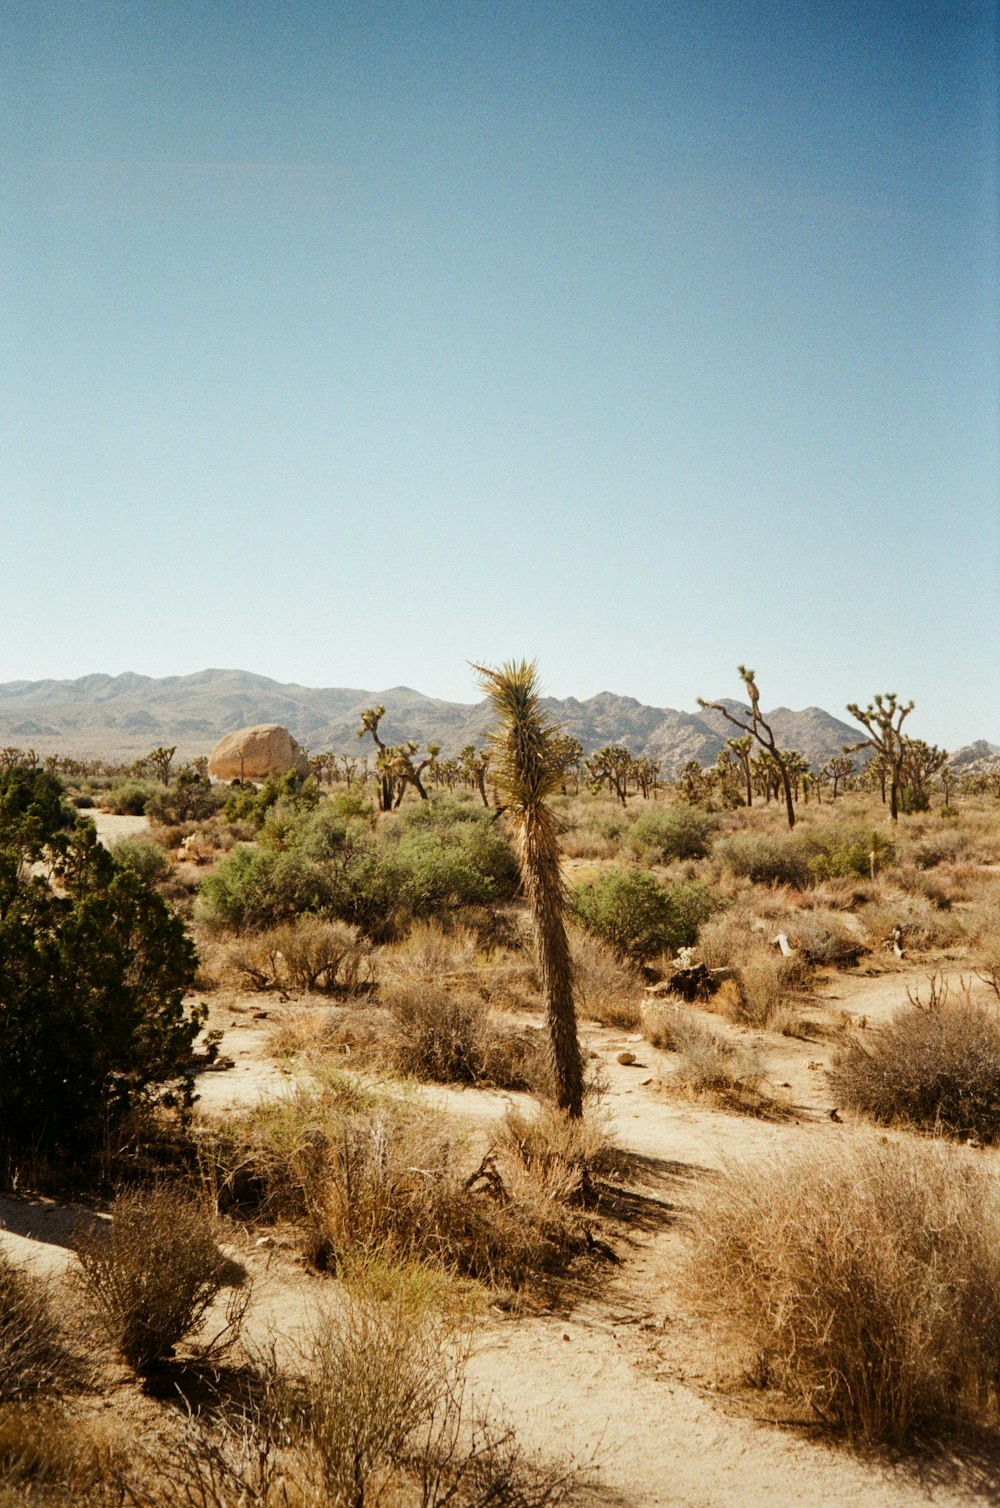 背景にいくつかの木と山がある砂漠の風景